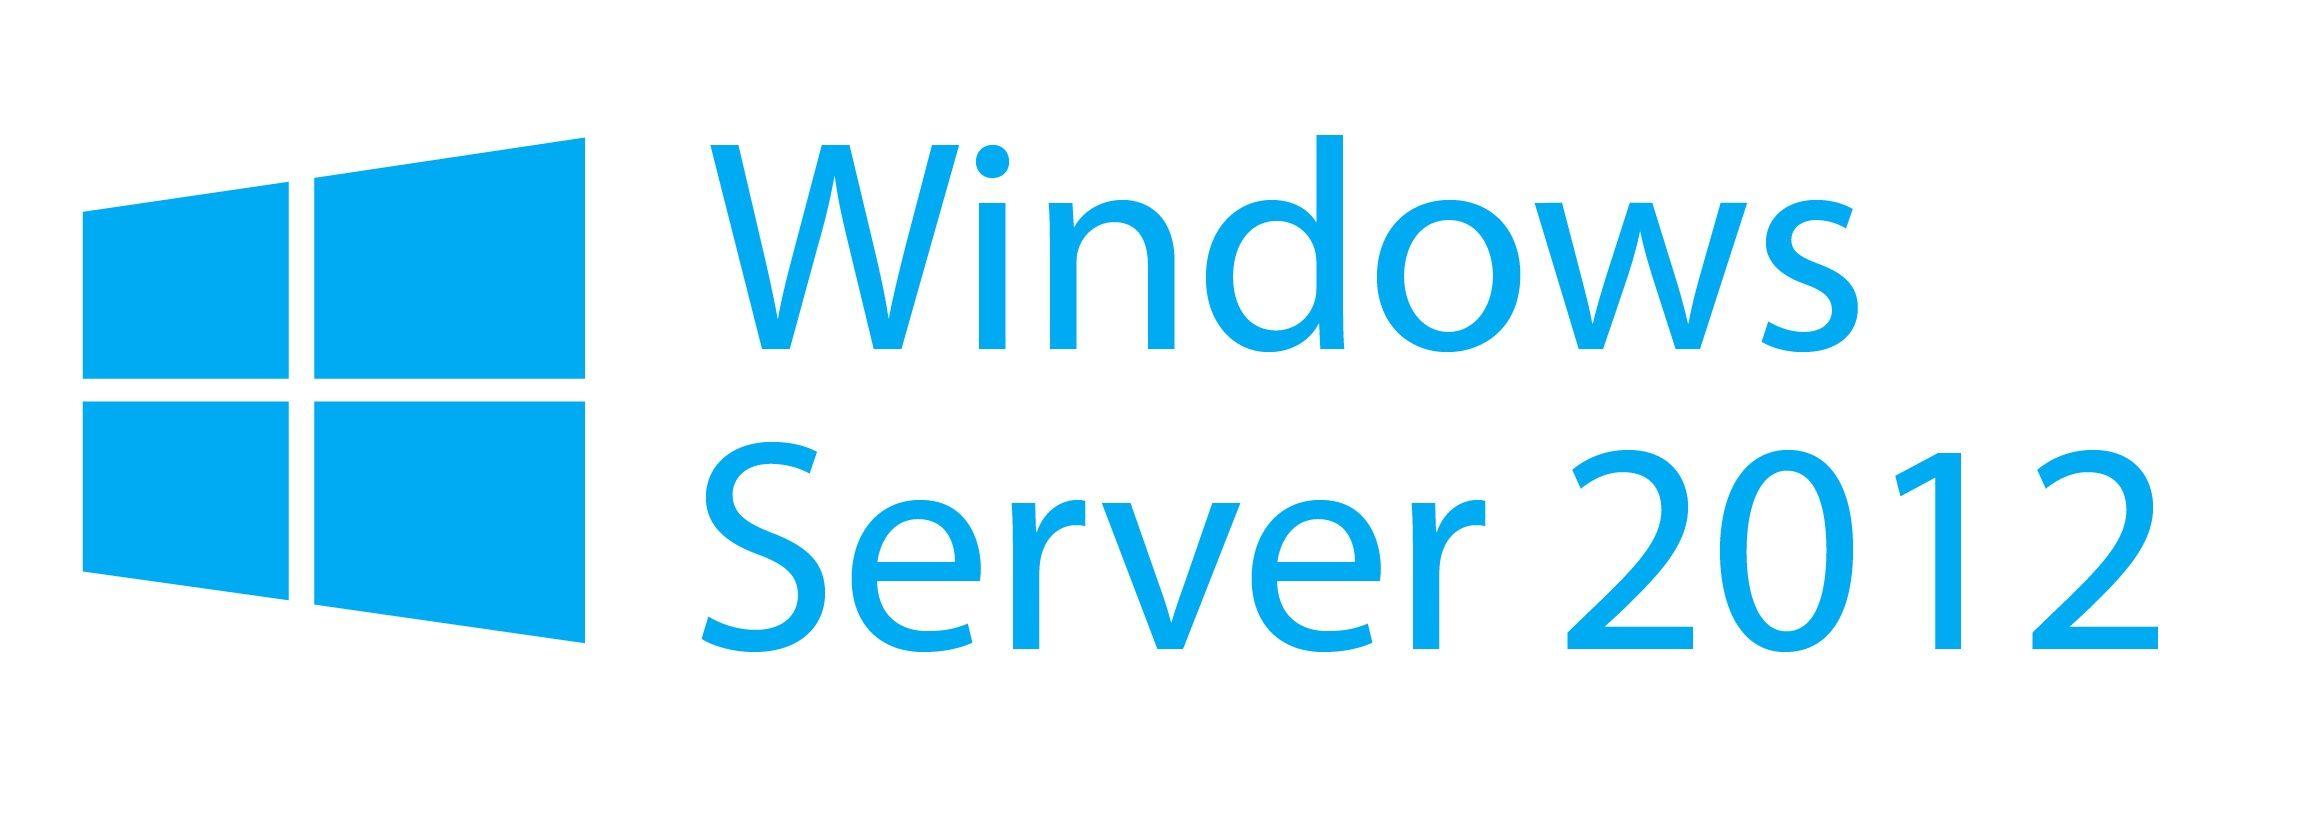 Windows Server Logo - Windows server 2012 Logos